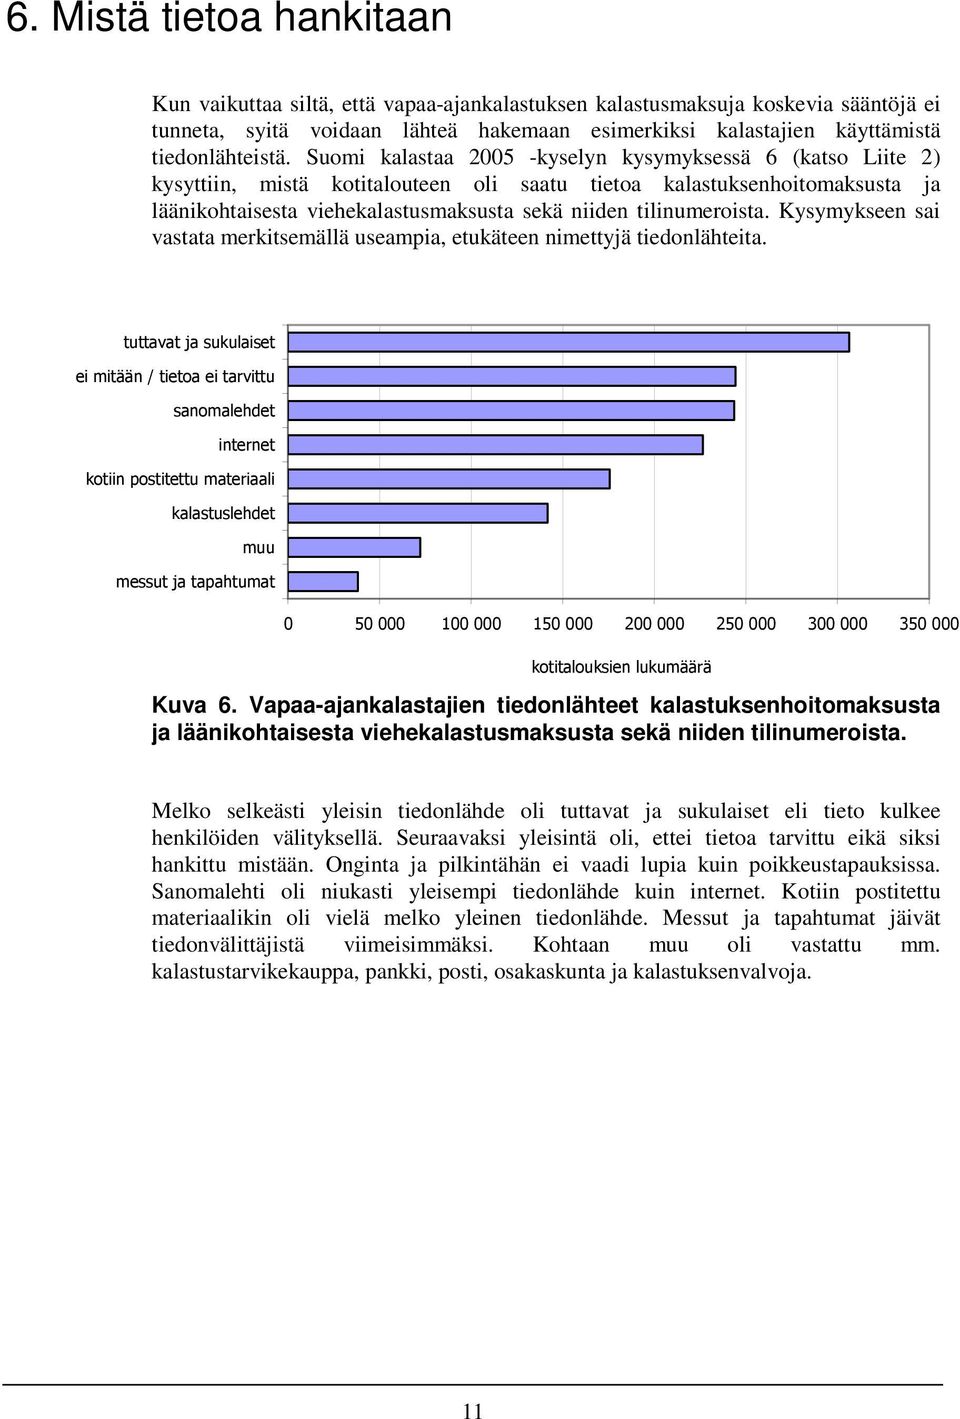 Suomi kalastaa 2005 -kyselyn kysymyksessä 6 (katso Liite 2) kysyttiin, mistä kotitalouteen oli saatu tietoa kalastuksenhoitomaksusta ja läänikohtaisesta viehekalastusmaksusta sekä niiden